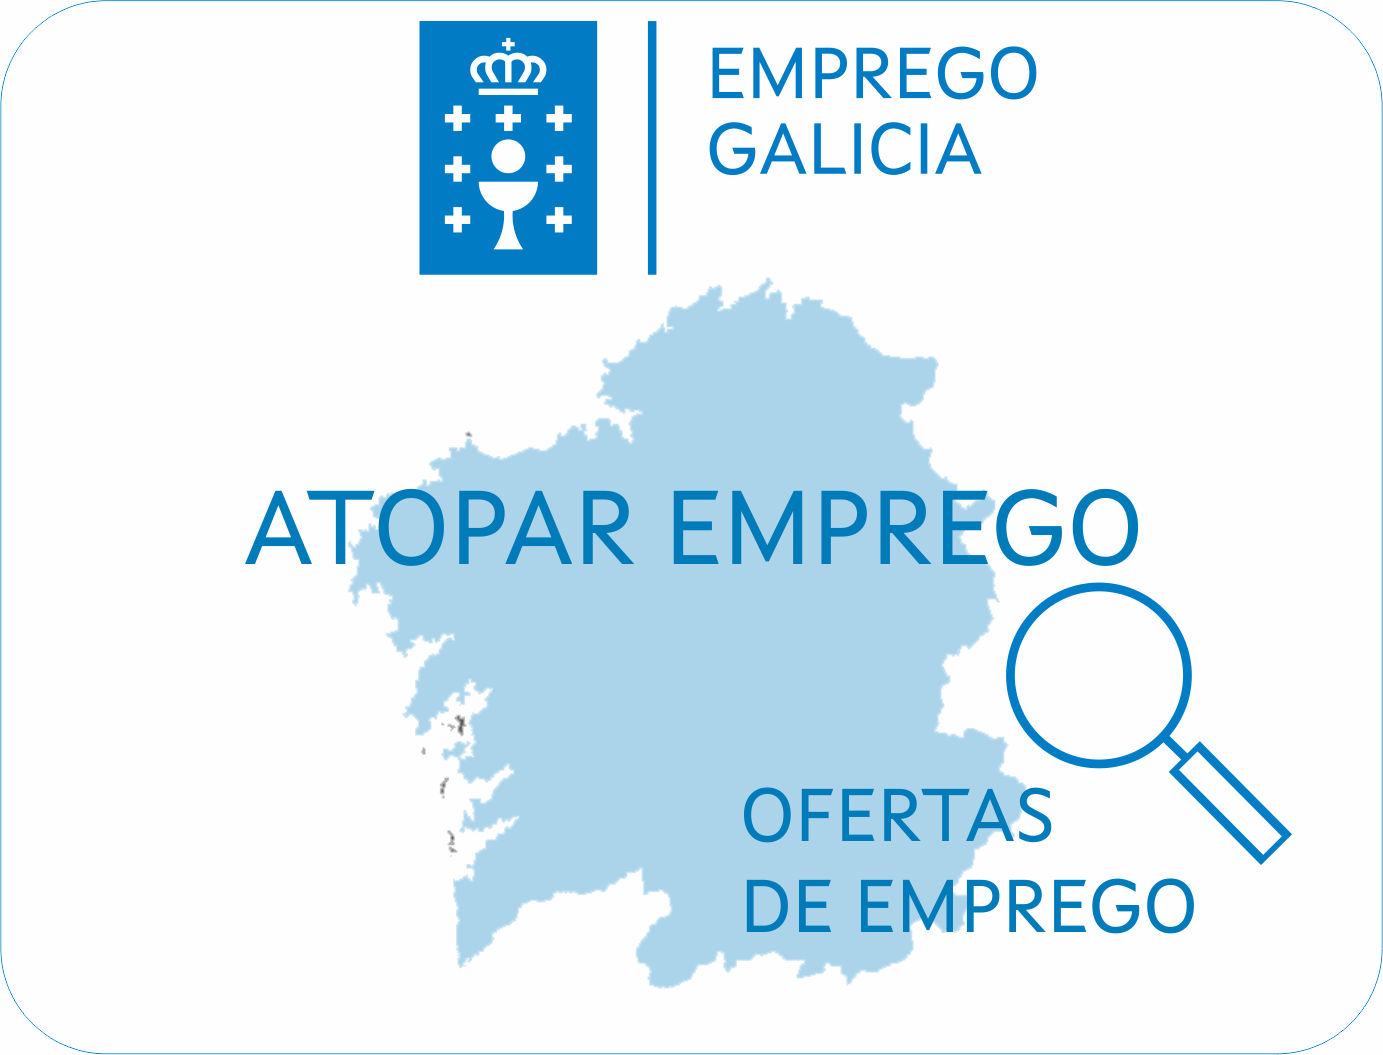 Emprego Galicia